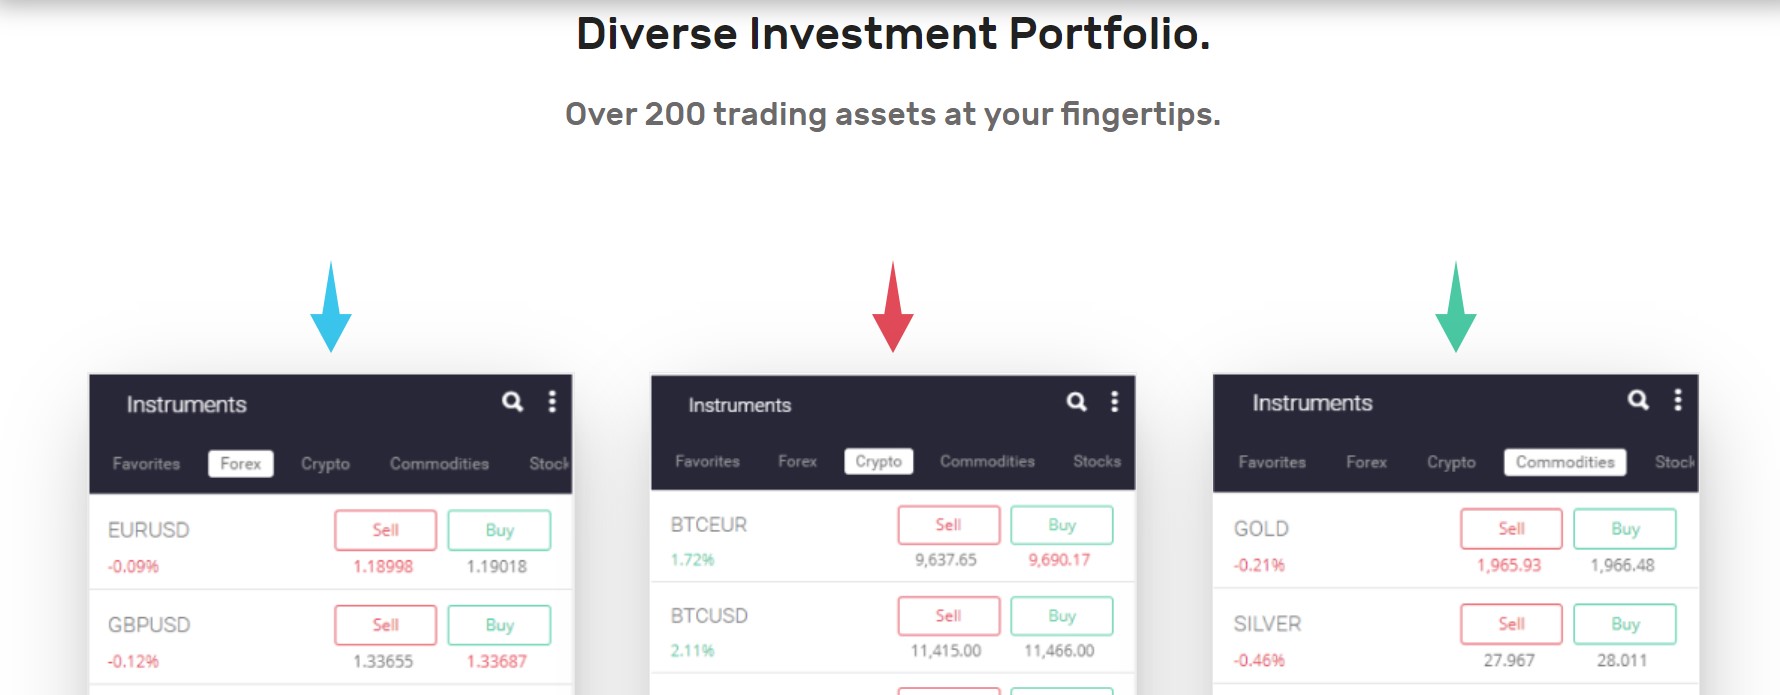 Currentcoins Investment portfolio